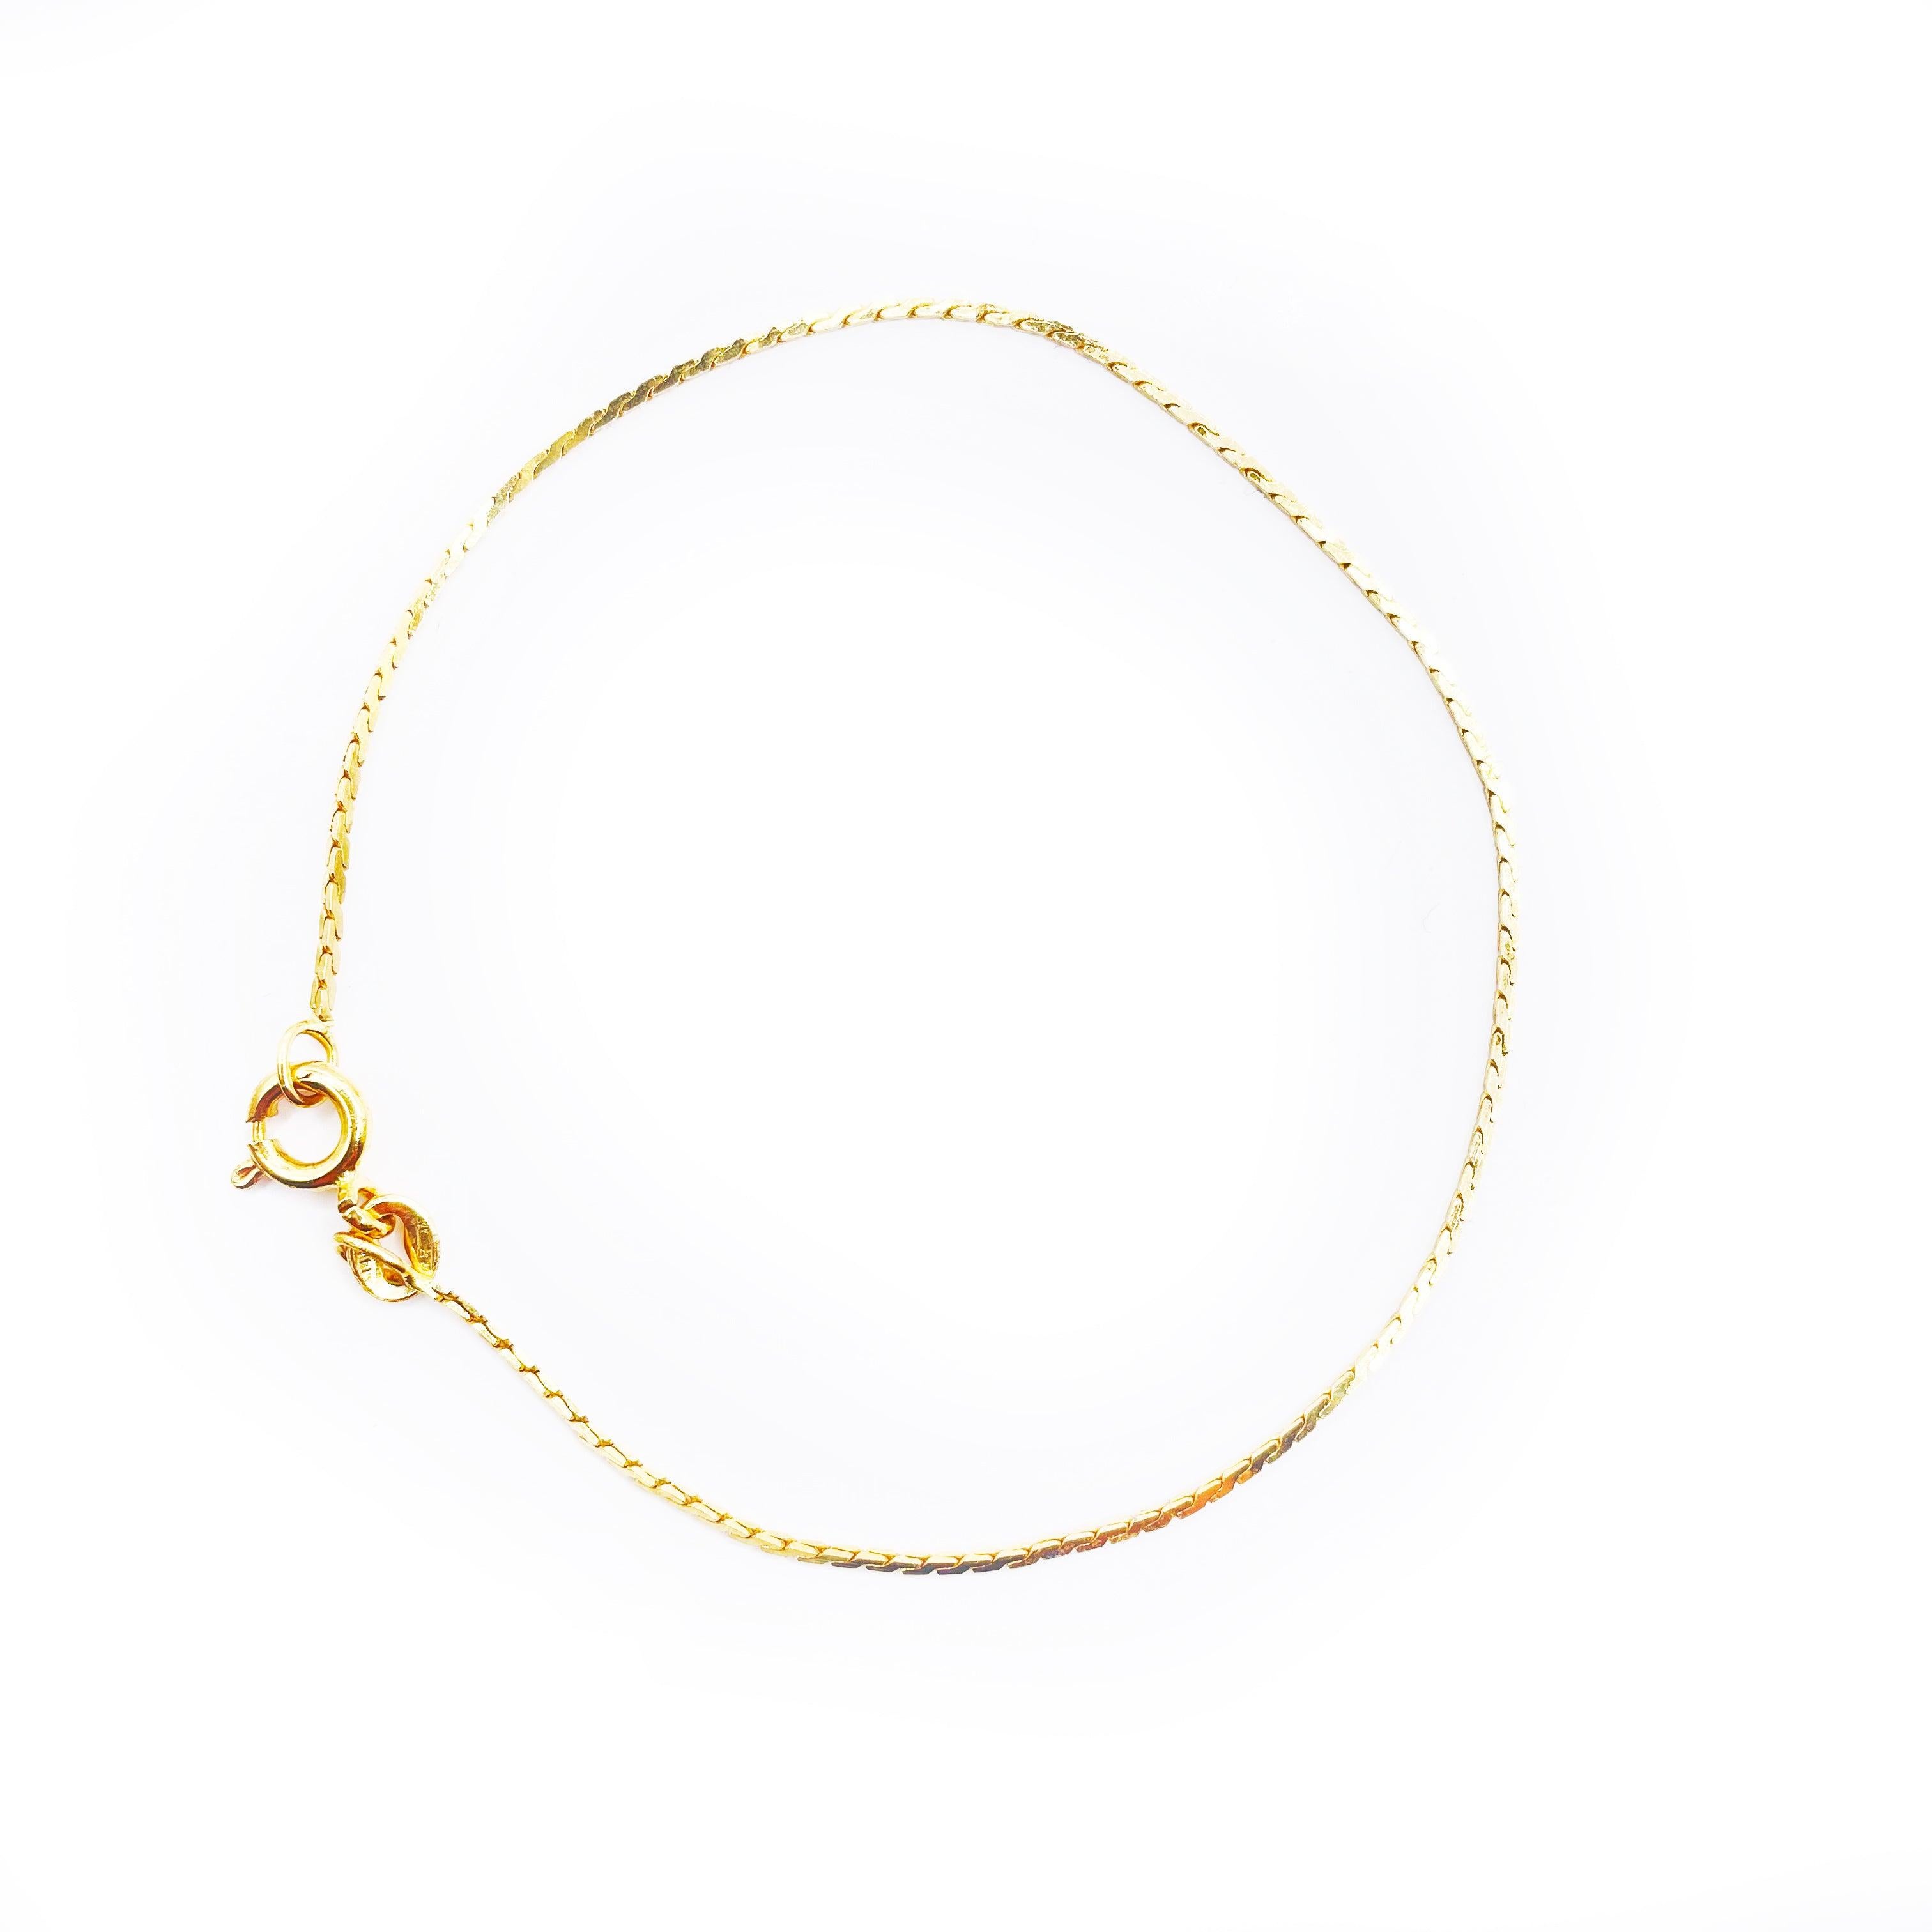 Women's Timeless Elegance 14K Yellow Gold Chain Bracelet For Sale